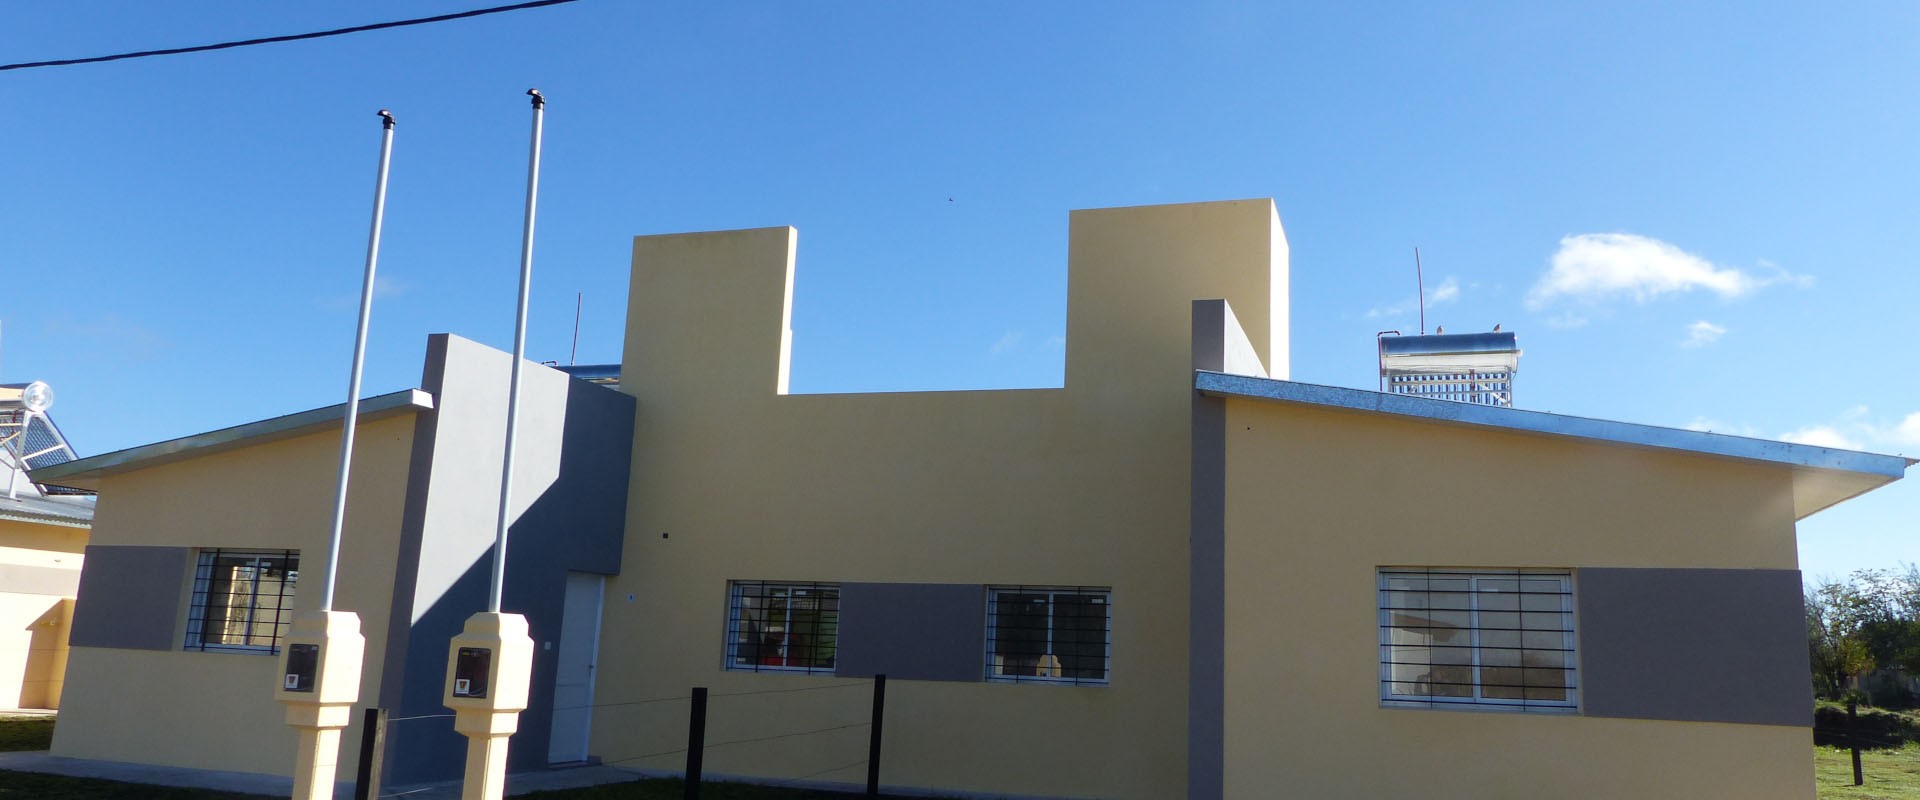 Construirán 40 nuevas viviendas en Villaguay con recursos provinciales